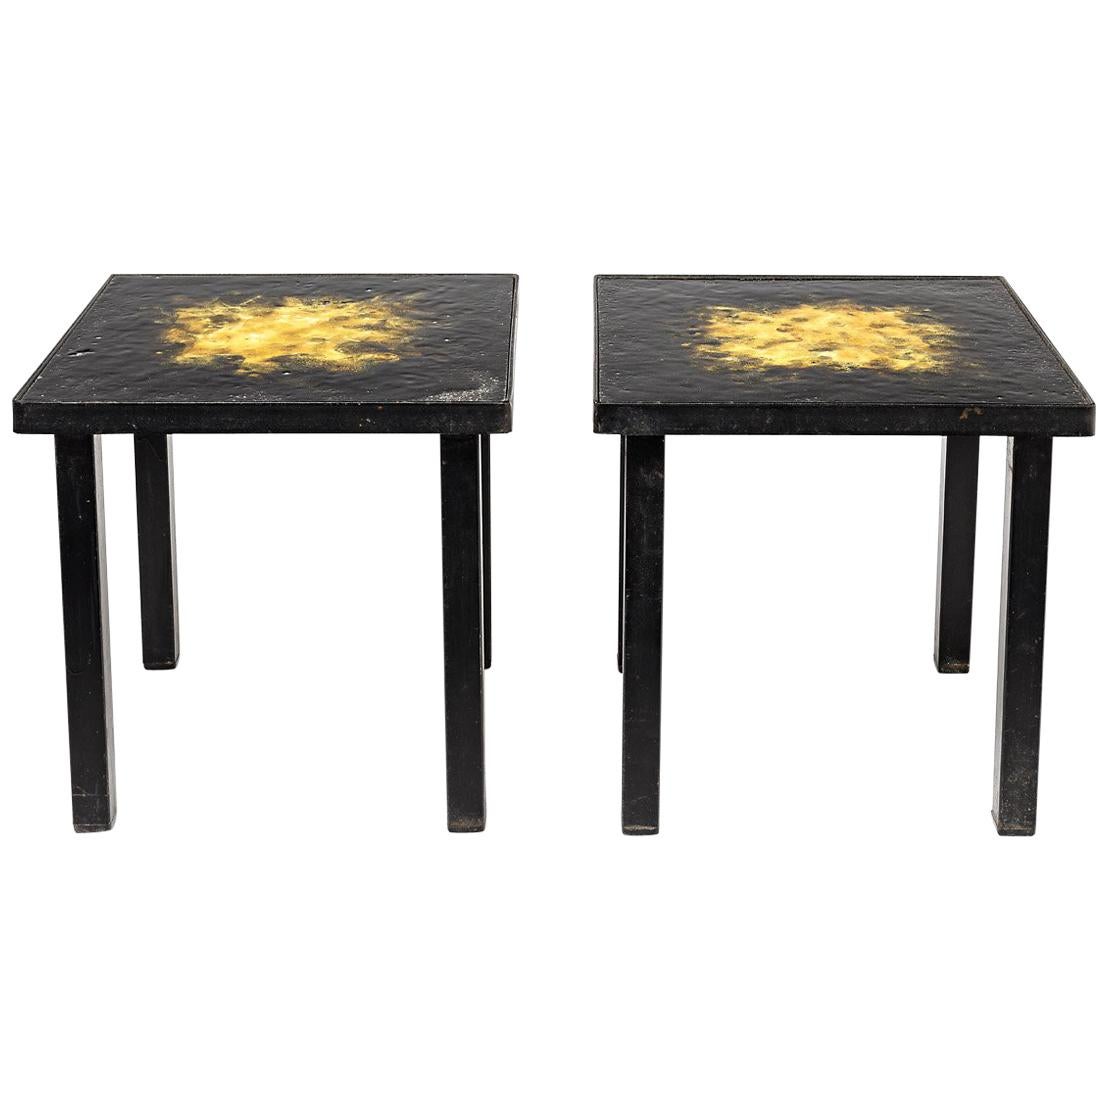 Paire de tables basses en céramique noir et jaune brillant, vers 1970